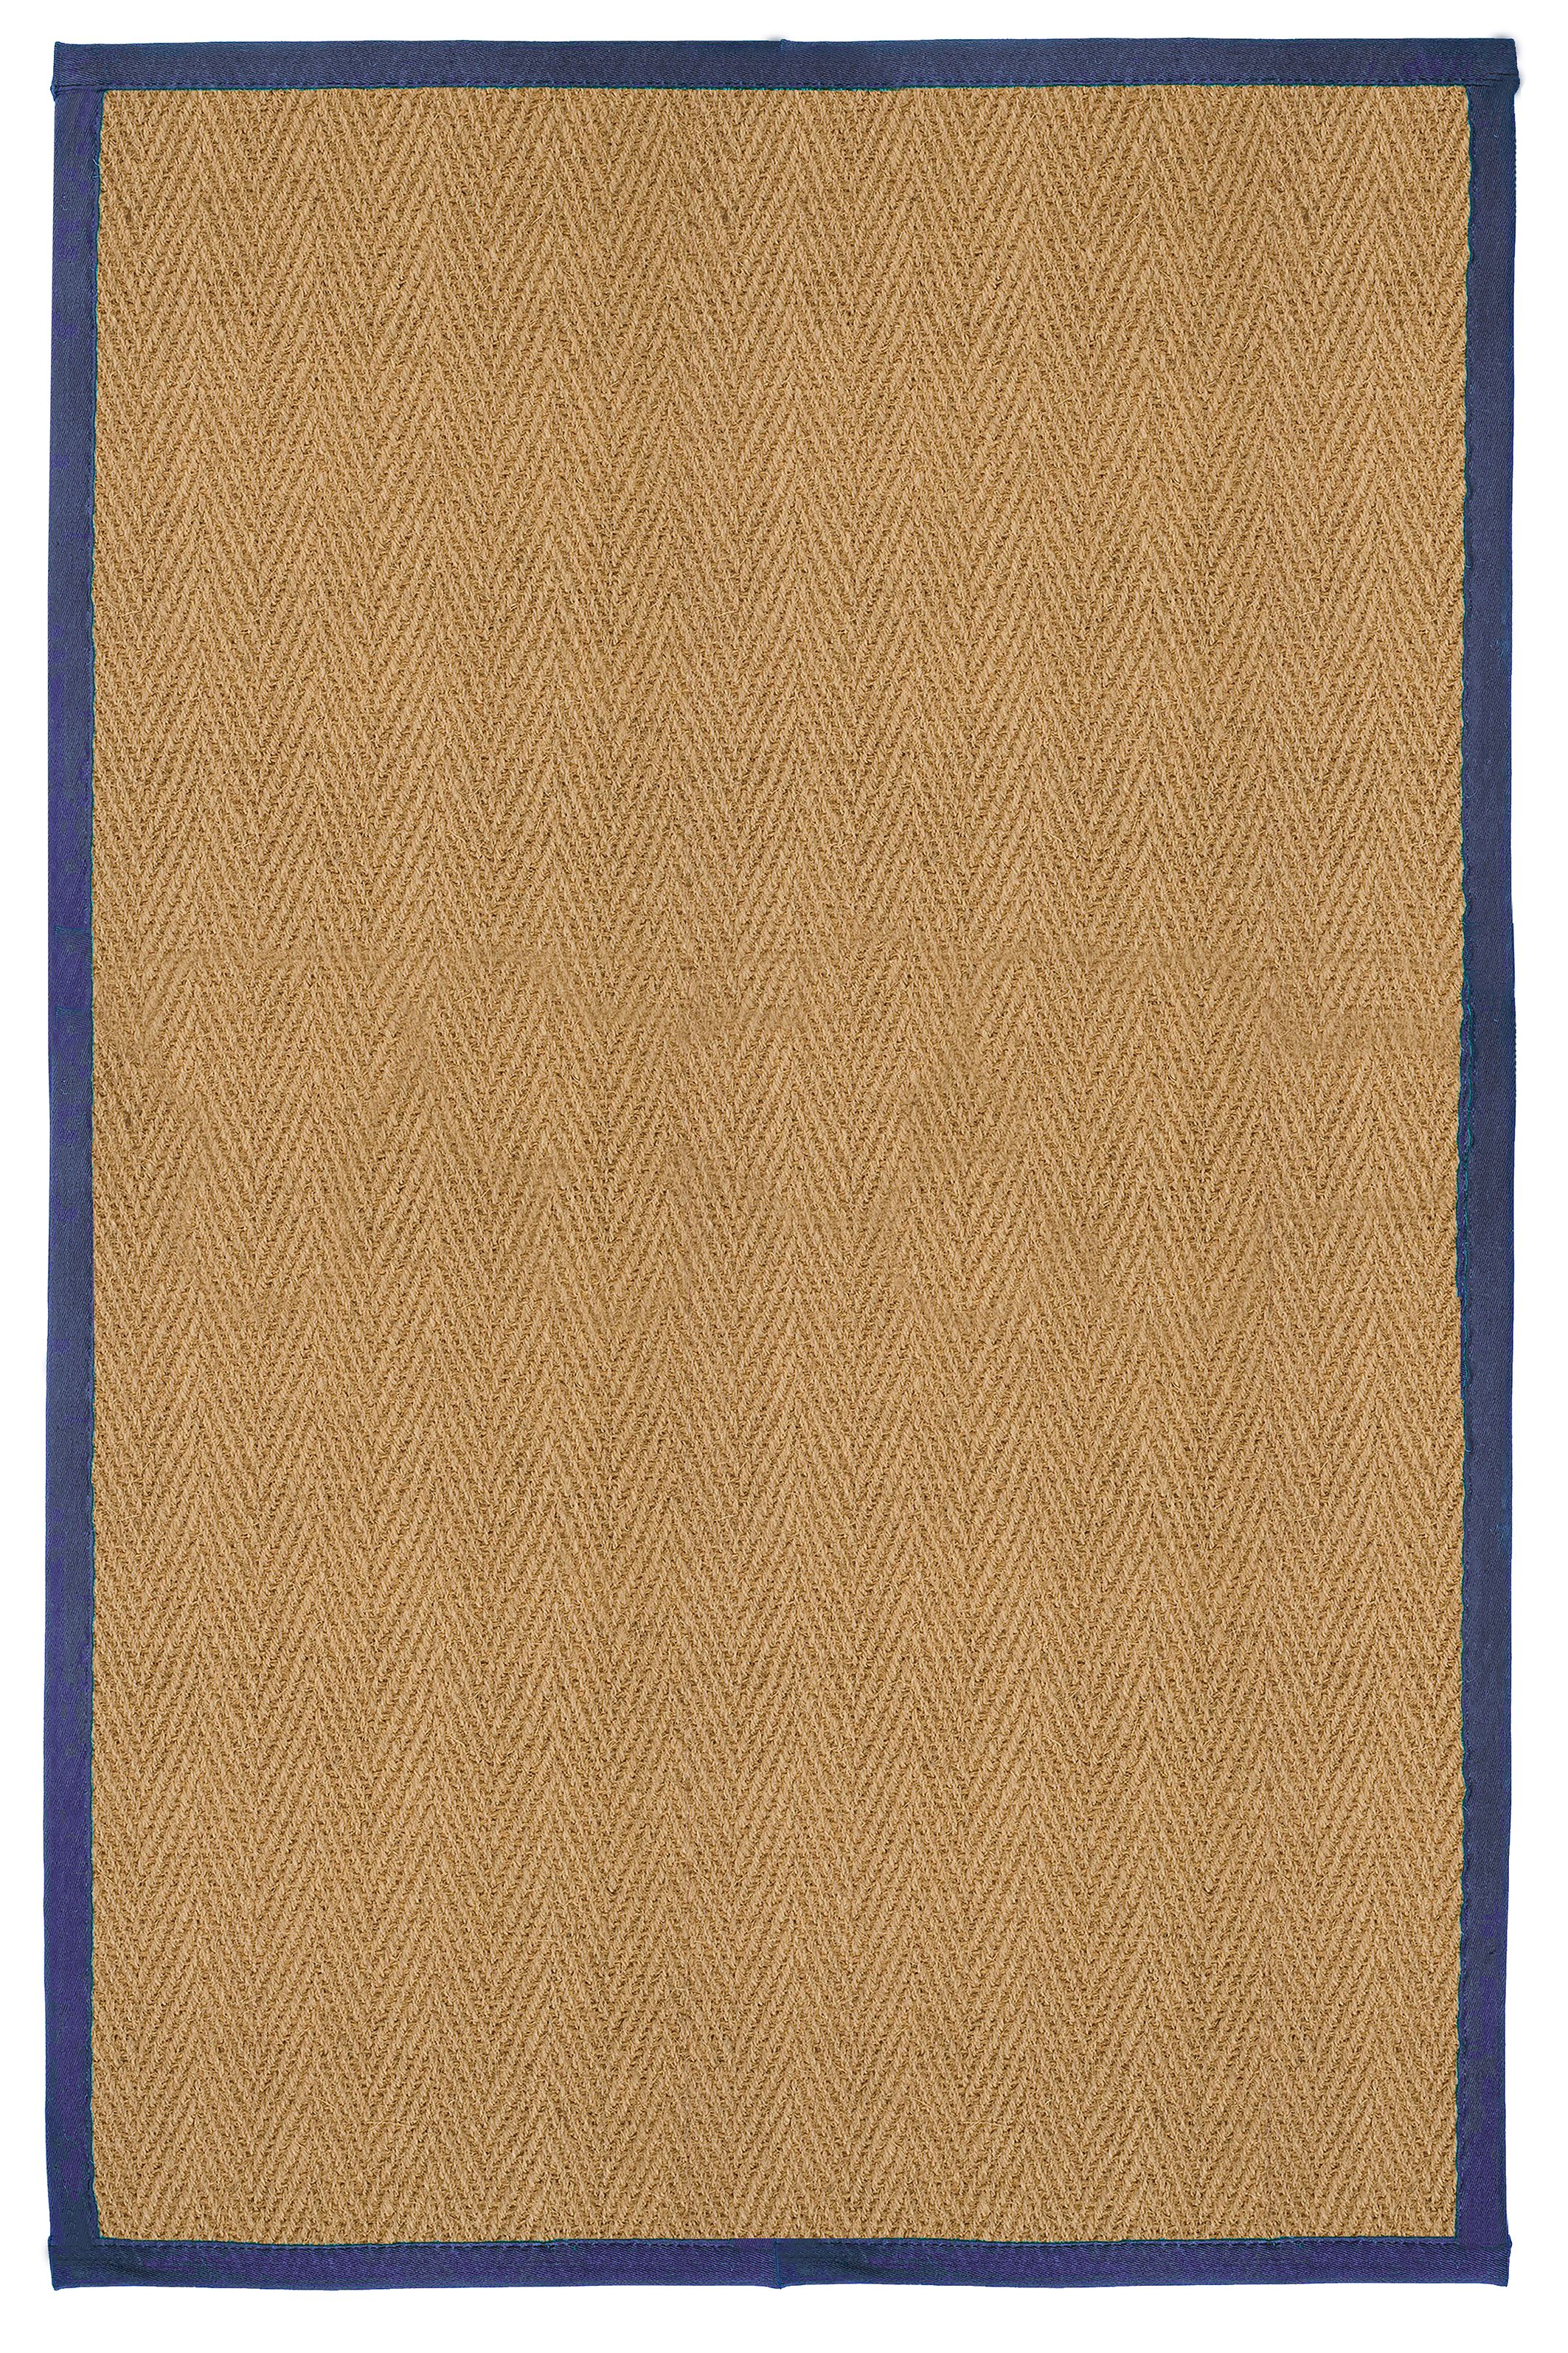 Herringbone weave Brown, blue Rug 150cmx100cm